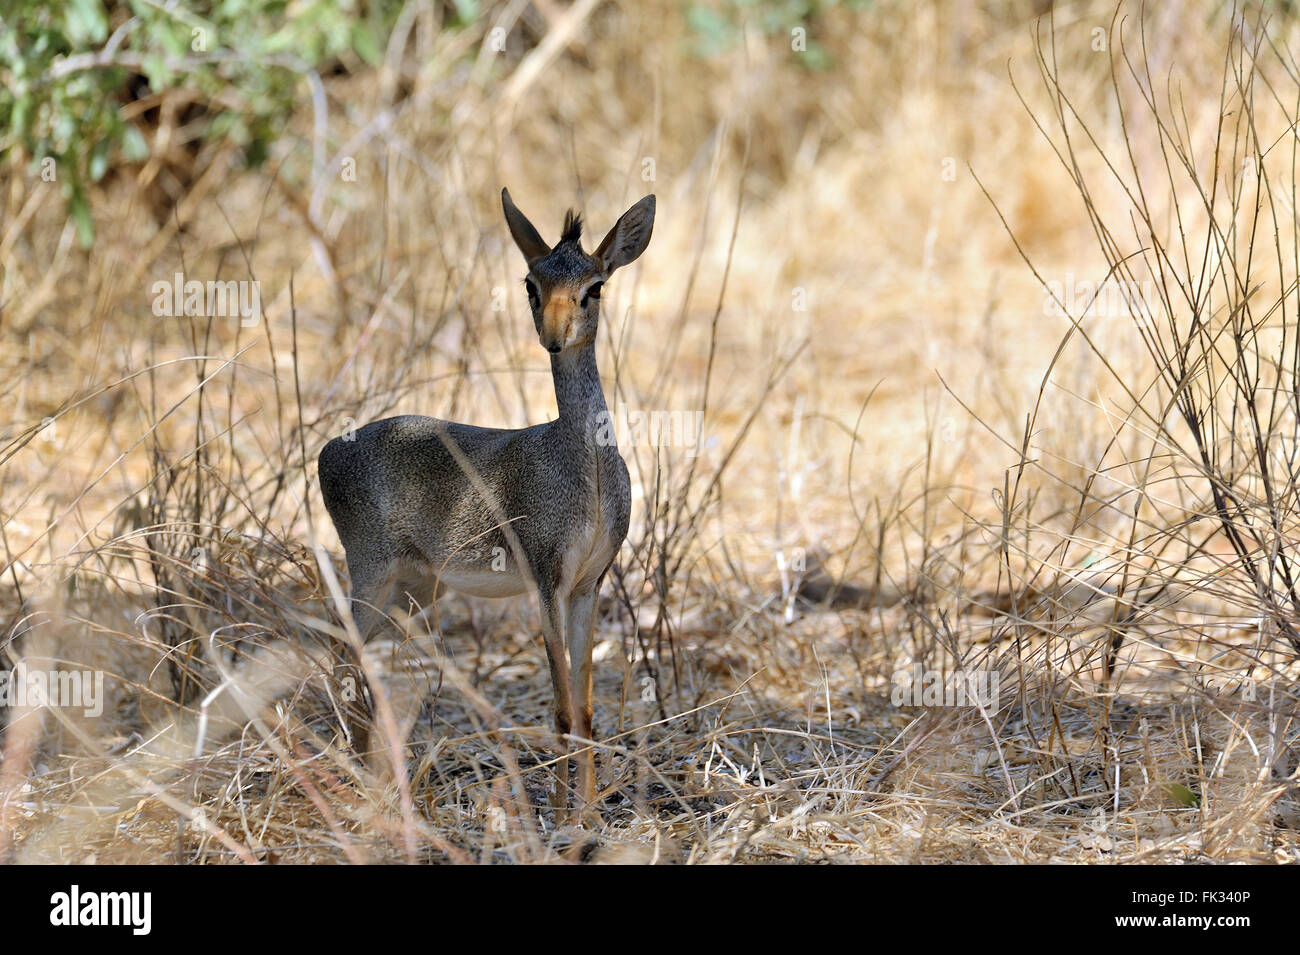 Dikdik, Madoqua, Antelope in Samburu Reserve in Kenya Stock Photo